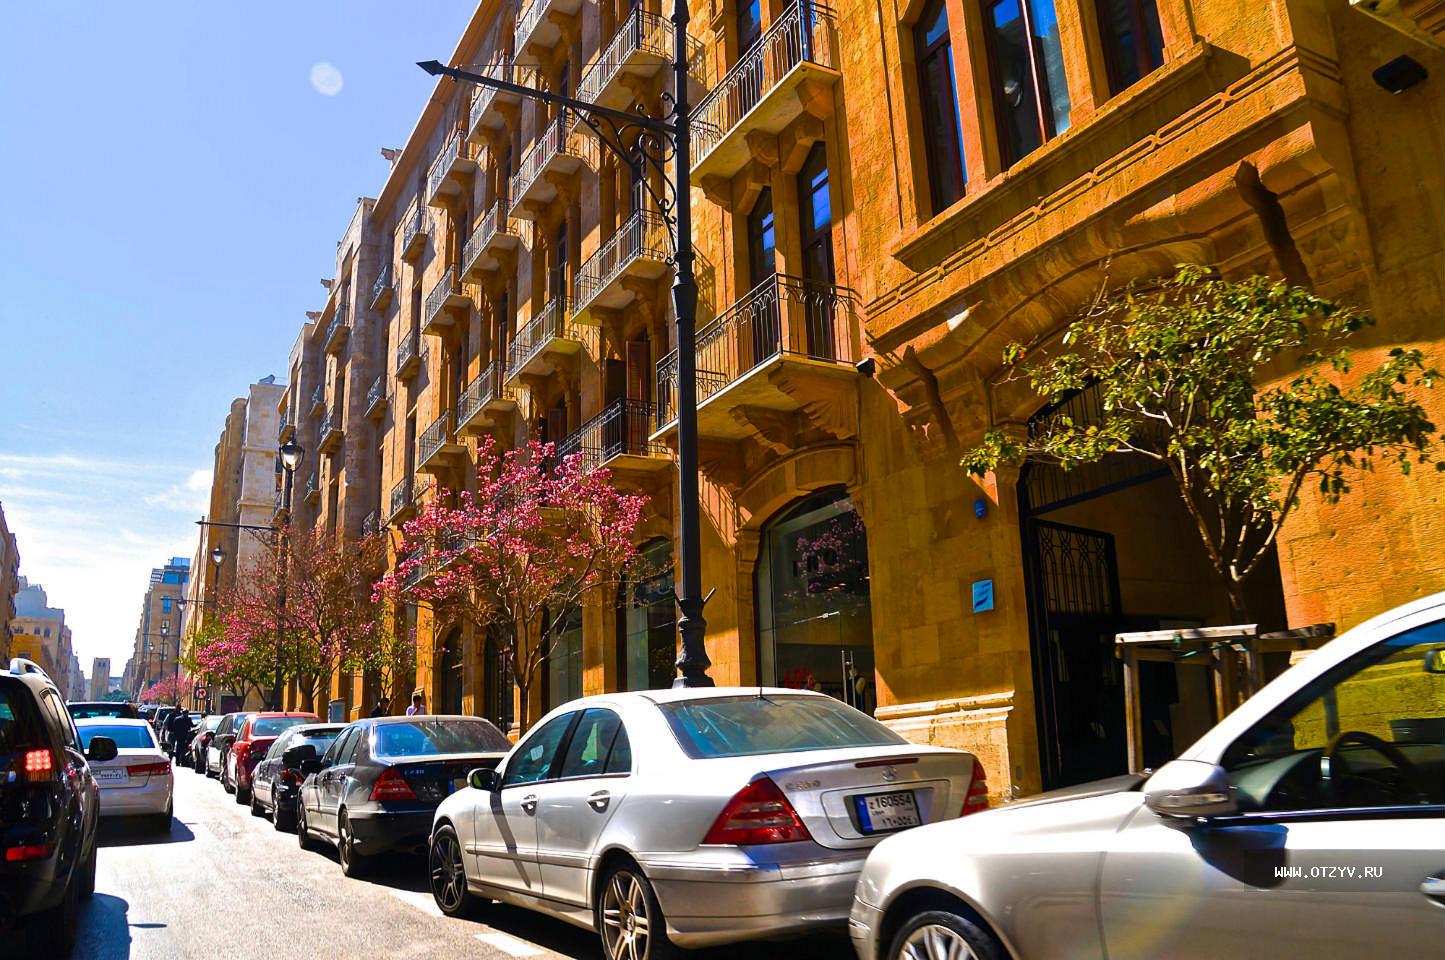 Бейруте какой город. Бейрут старый город. Бейрут Ливан улицы. Бейрут армянский квартал. Бейрут старый город улицы.